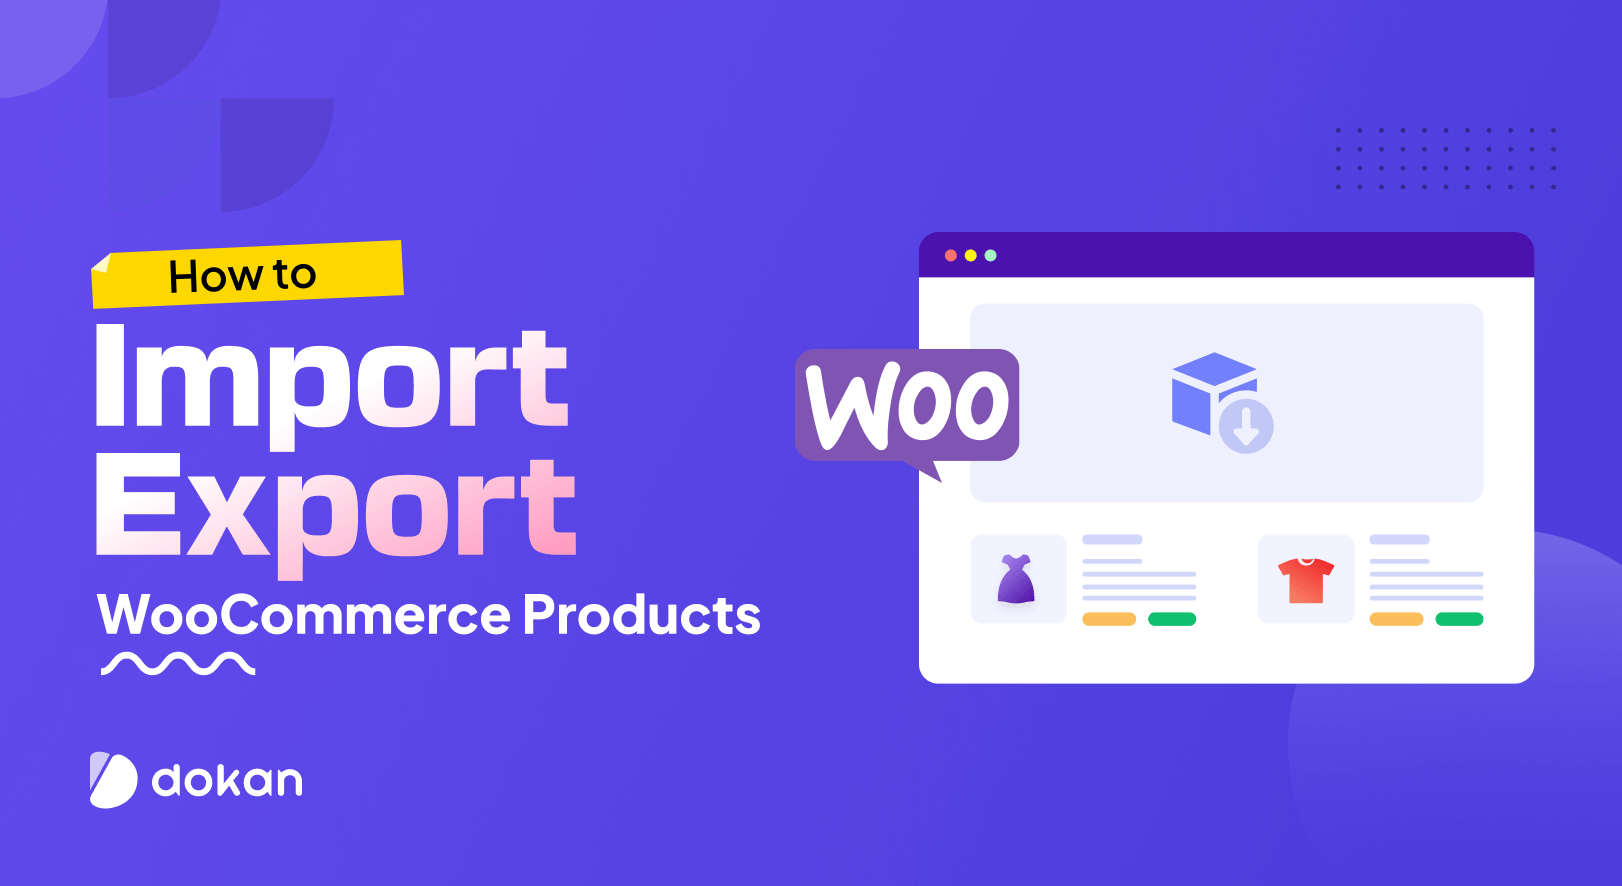 كيفية استيراد وتصدير منتجات WooCommerce - طريقتان سهلتان للمبتدئين